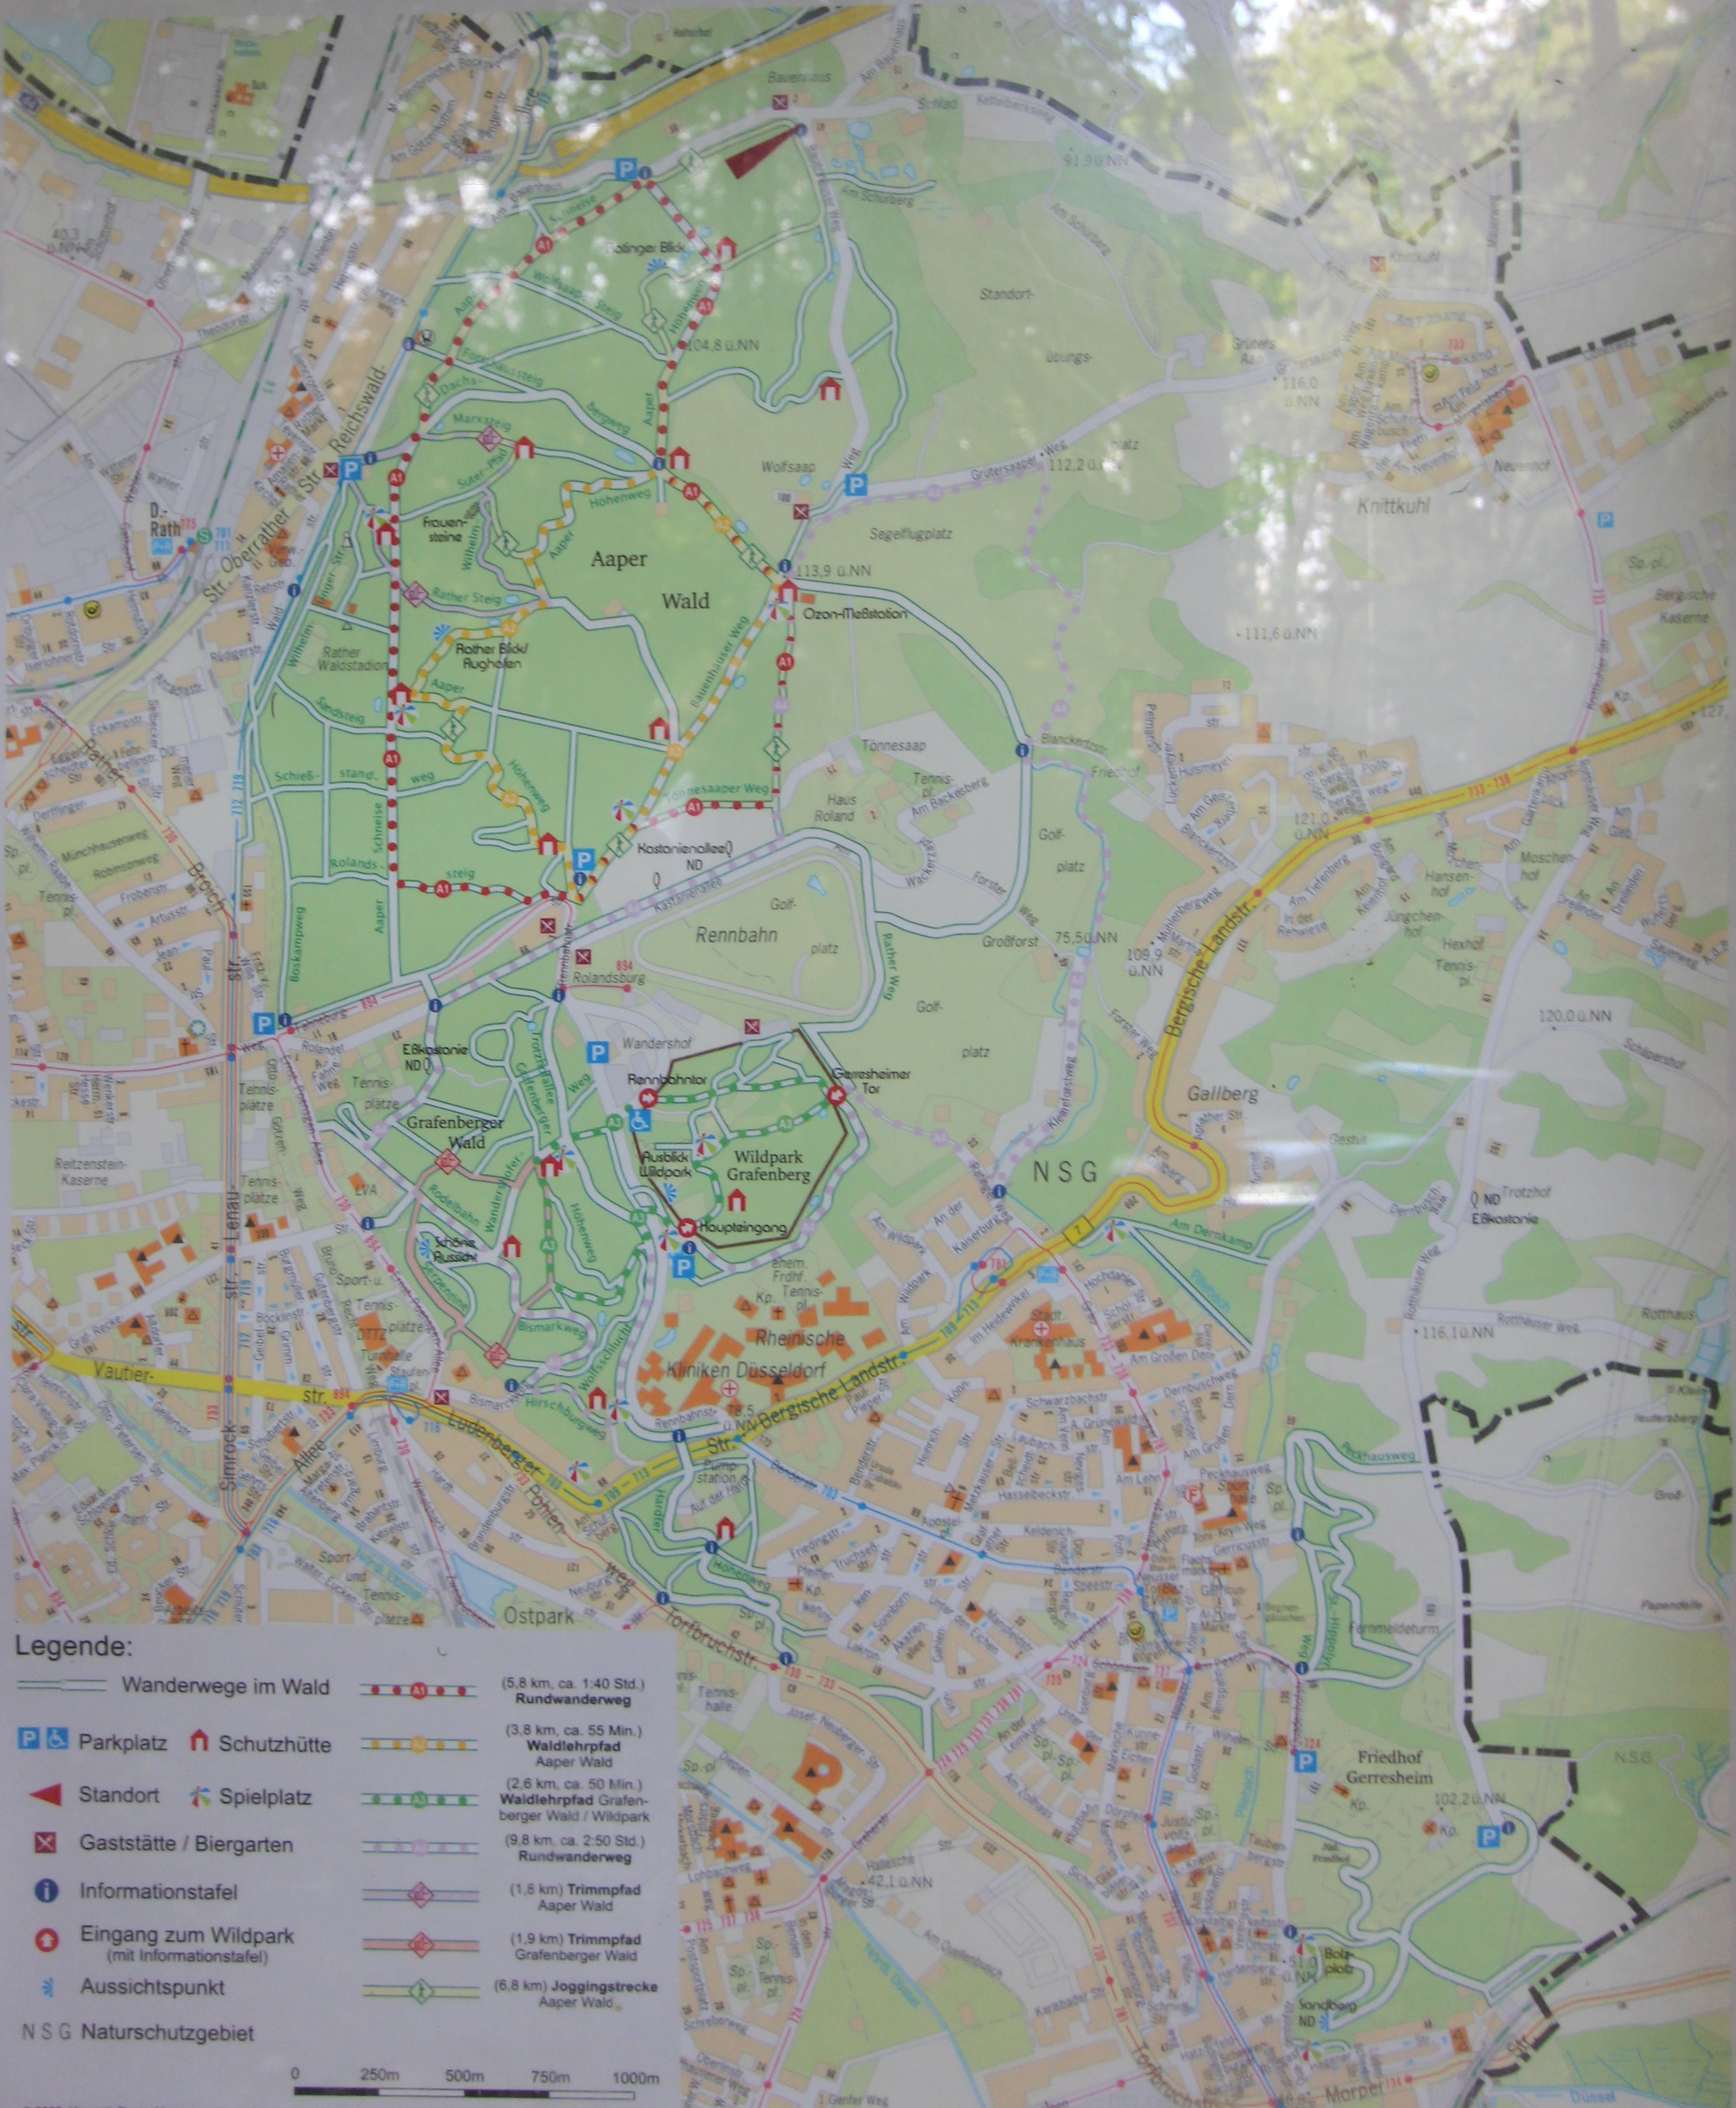 aaper wald düsseldorf karte File Dusseldorf Rath Wegweiser Aaper Wald A Jpg Wikimedia Commons aaper wald düsseldorf karte